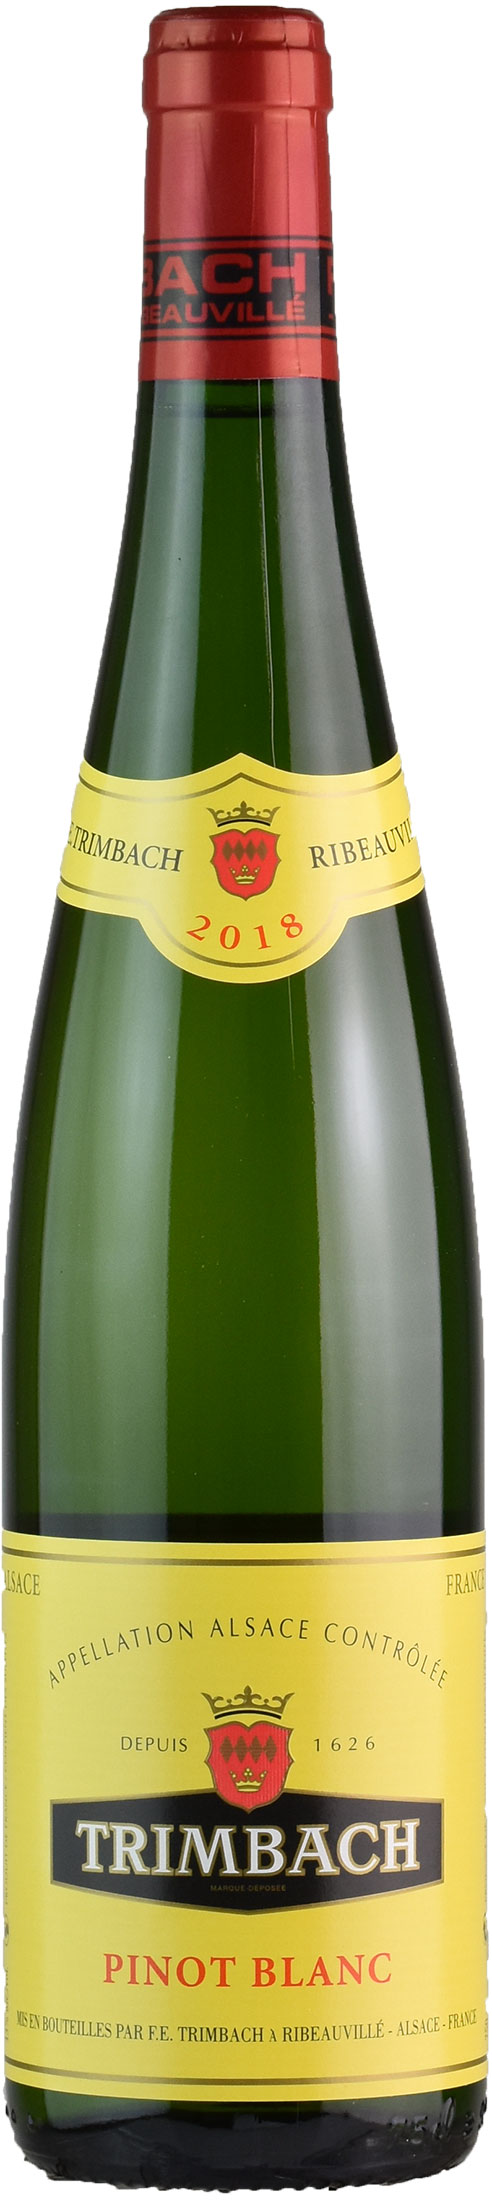 Trimbach Pinot Bianco 2018